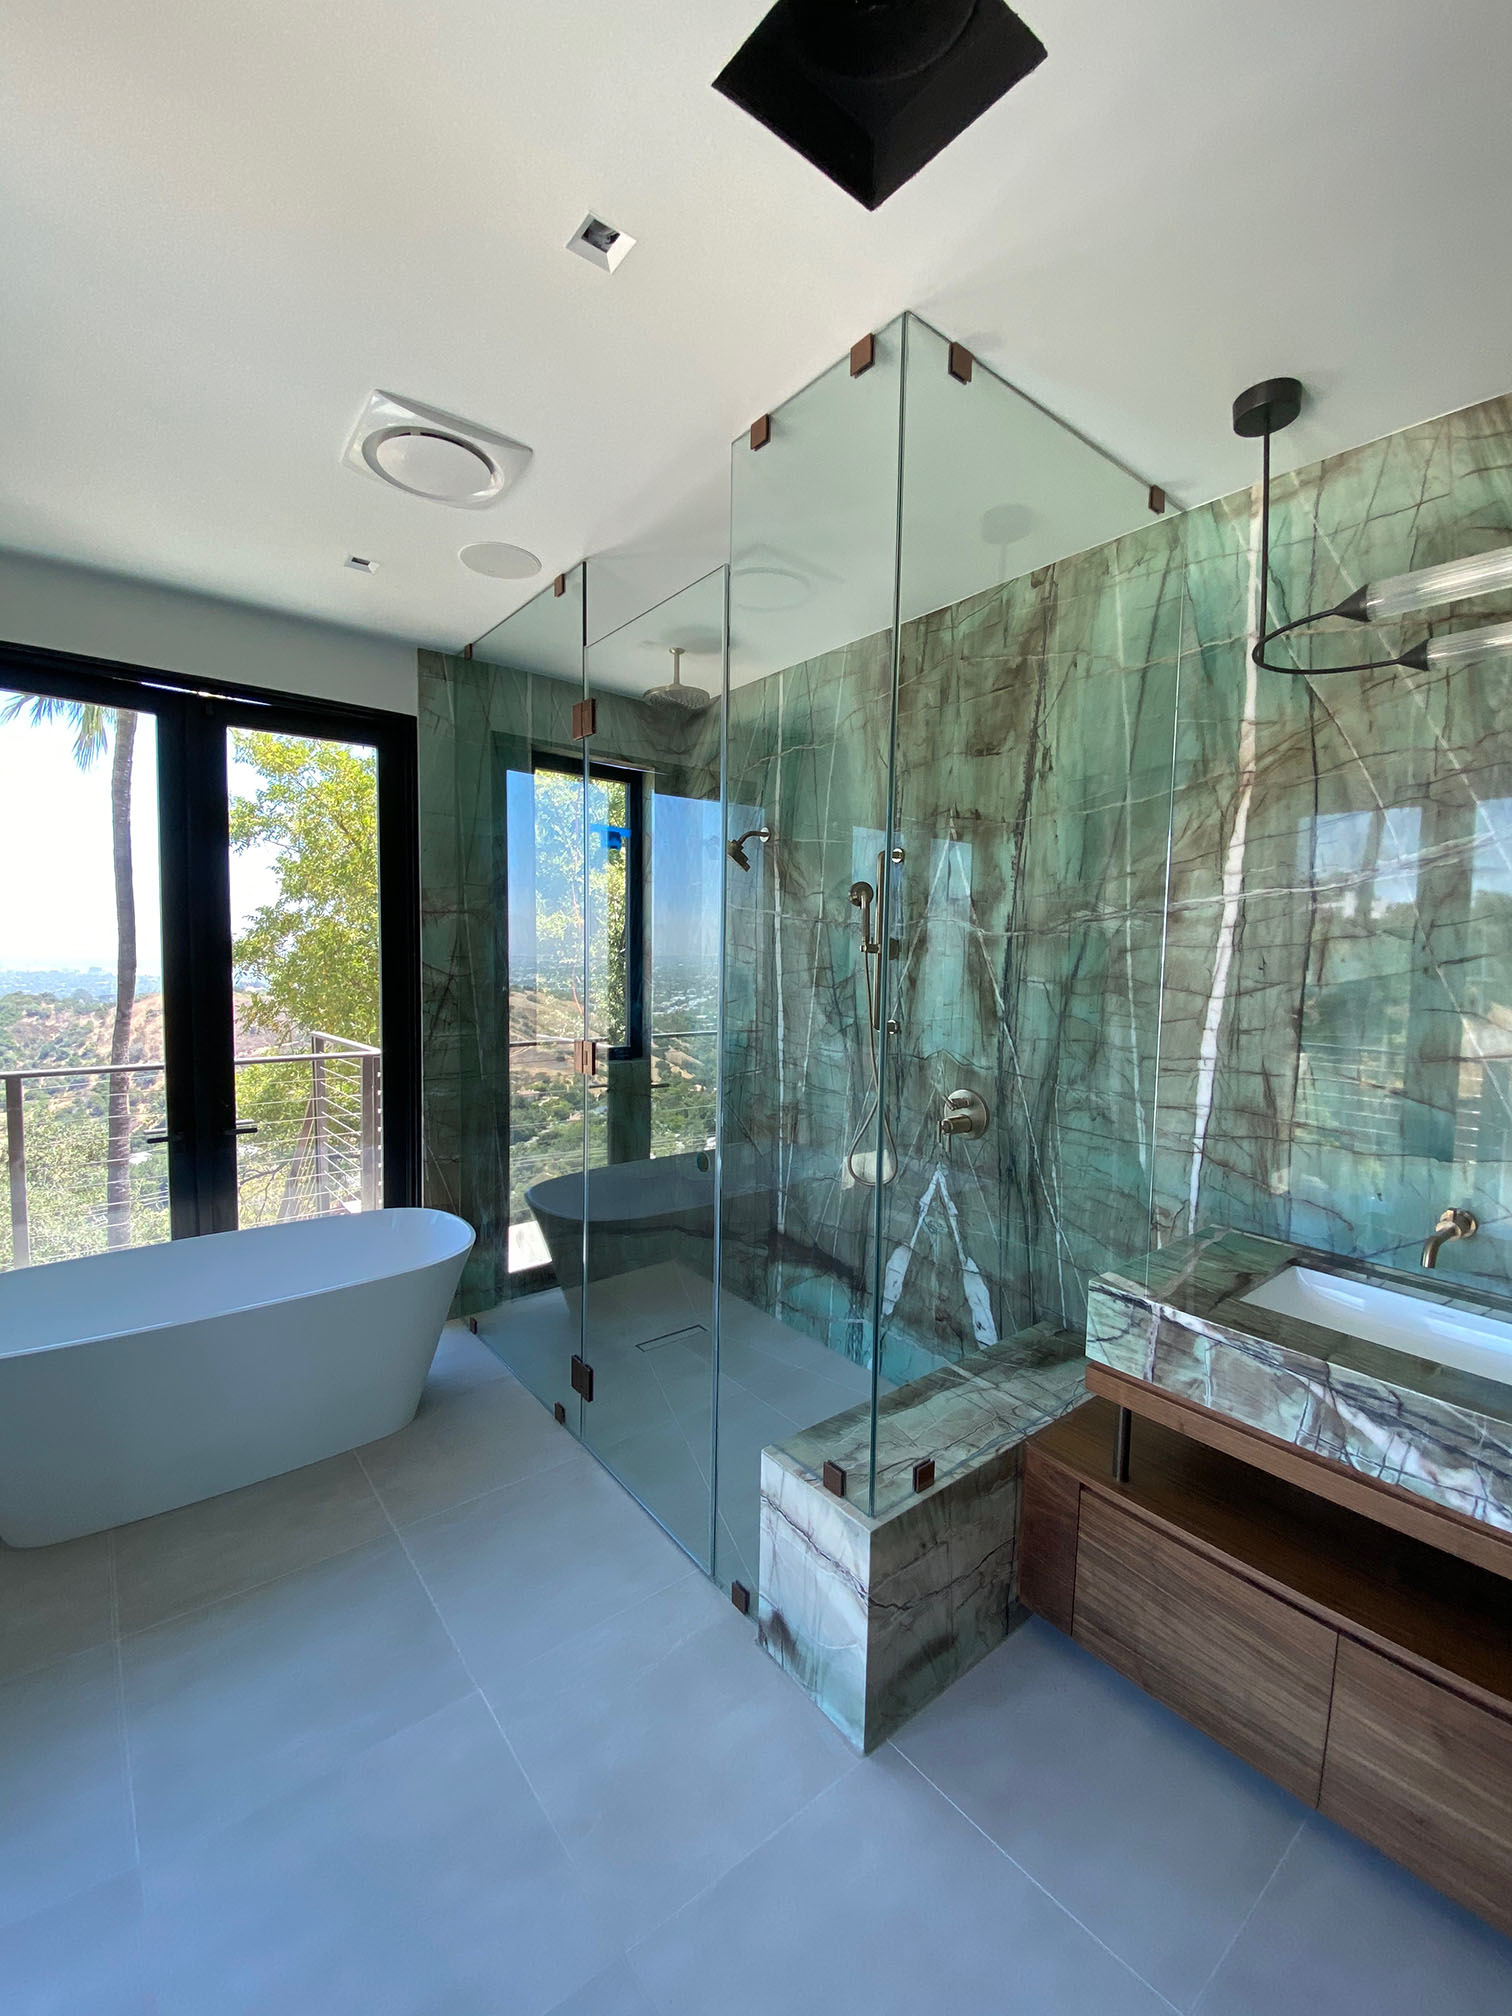 Home design plans contemporary master bathroom